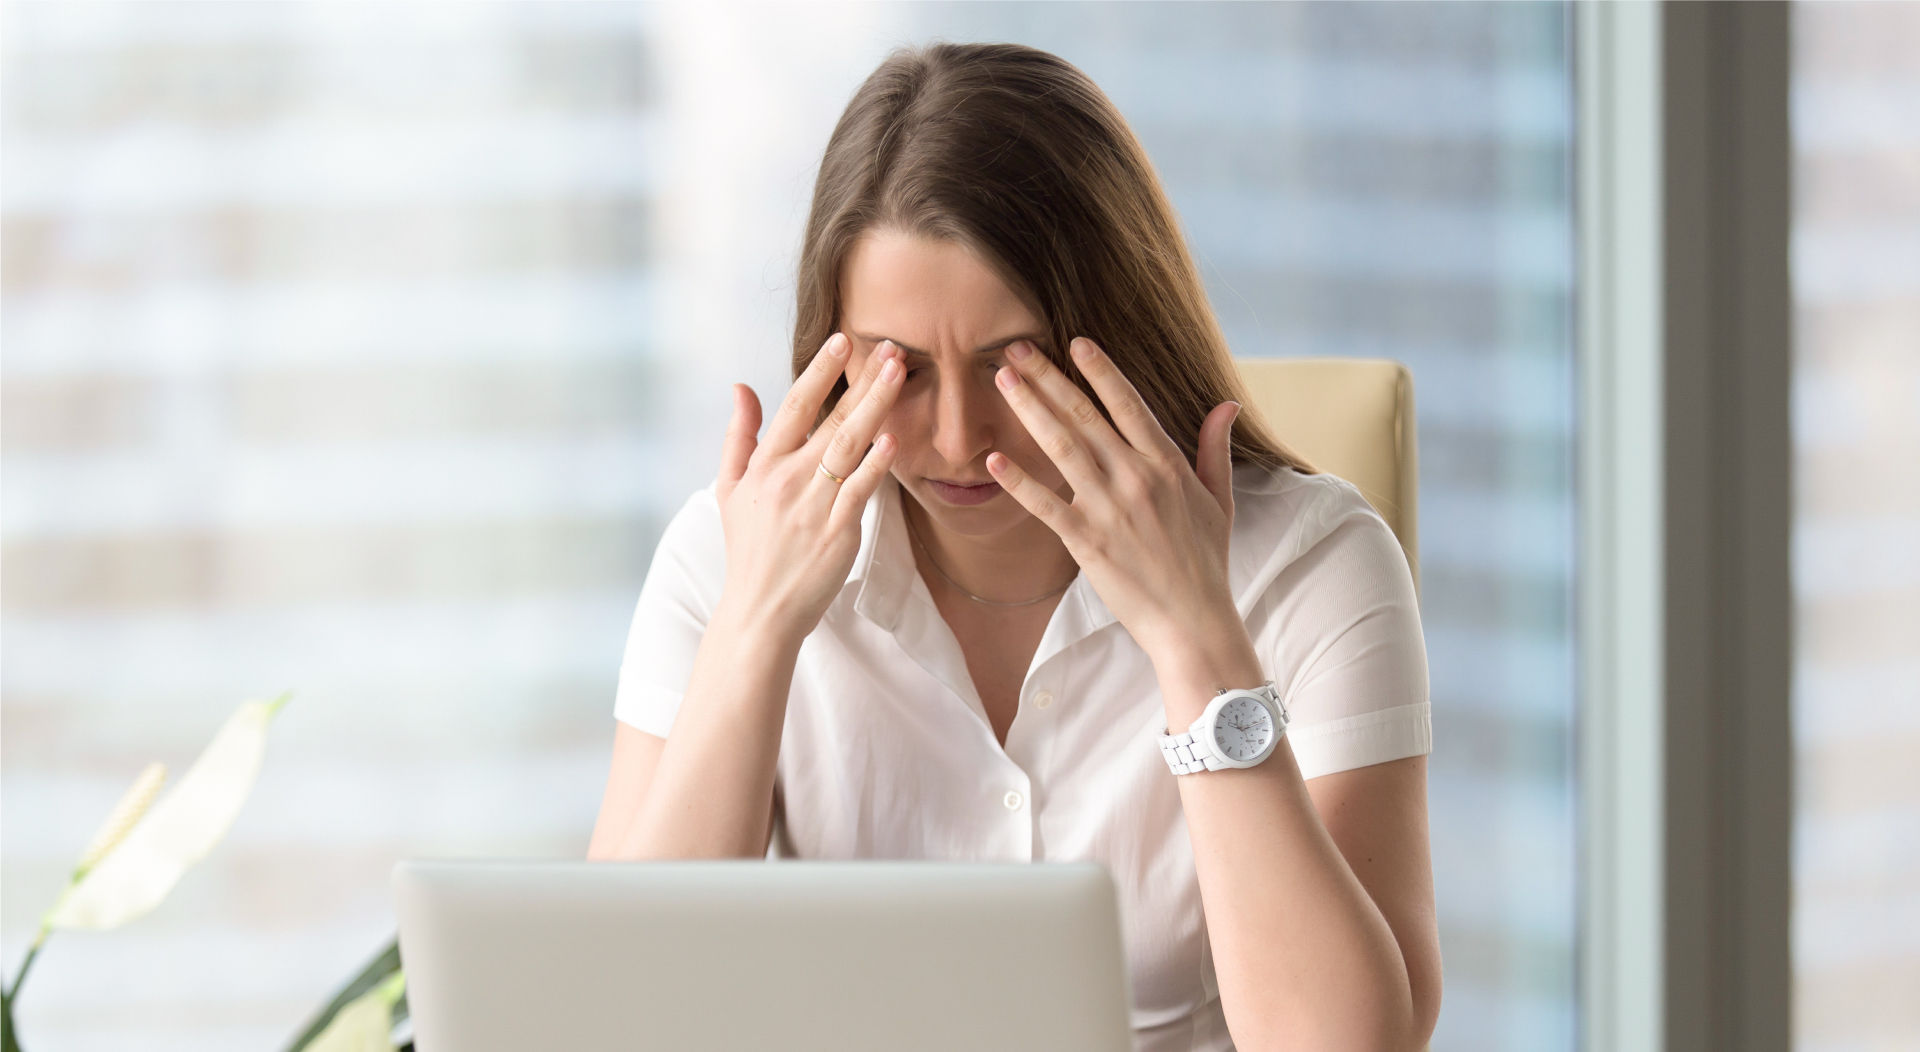 Симптоми синдрому комп’ютерного зору (CVS), включаючи головний біль, сльозоточивість, почервоніння та розмитість зору, часто пов’язані з напругою очей.